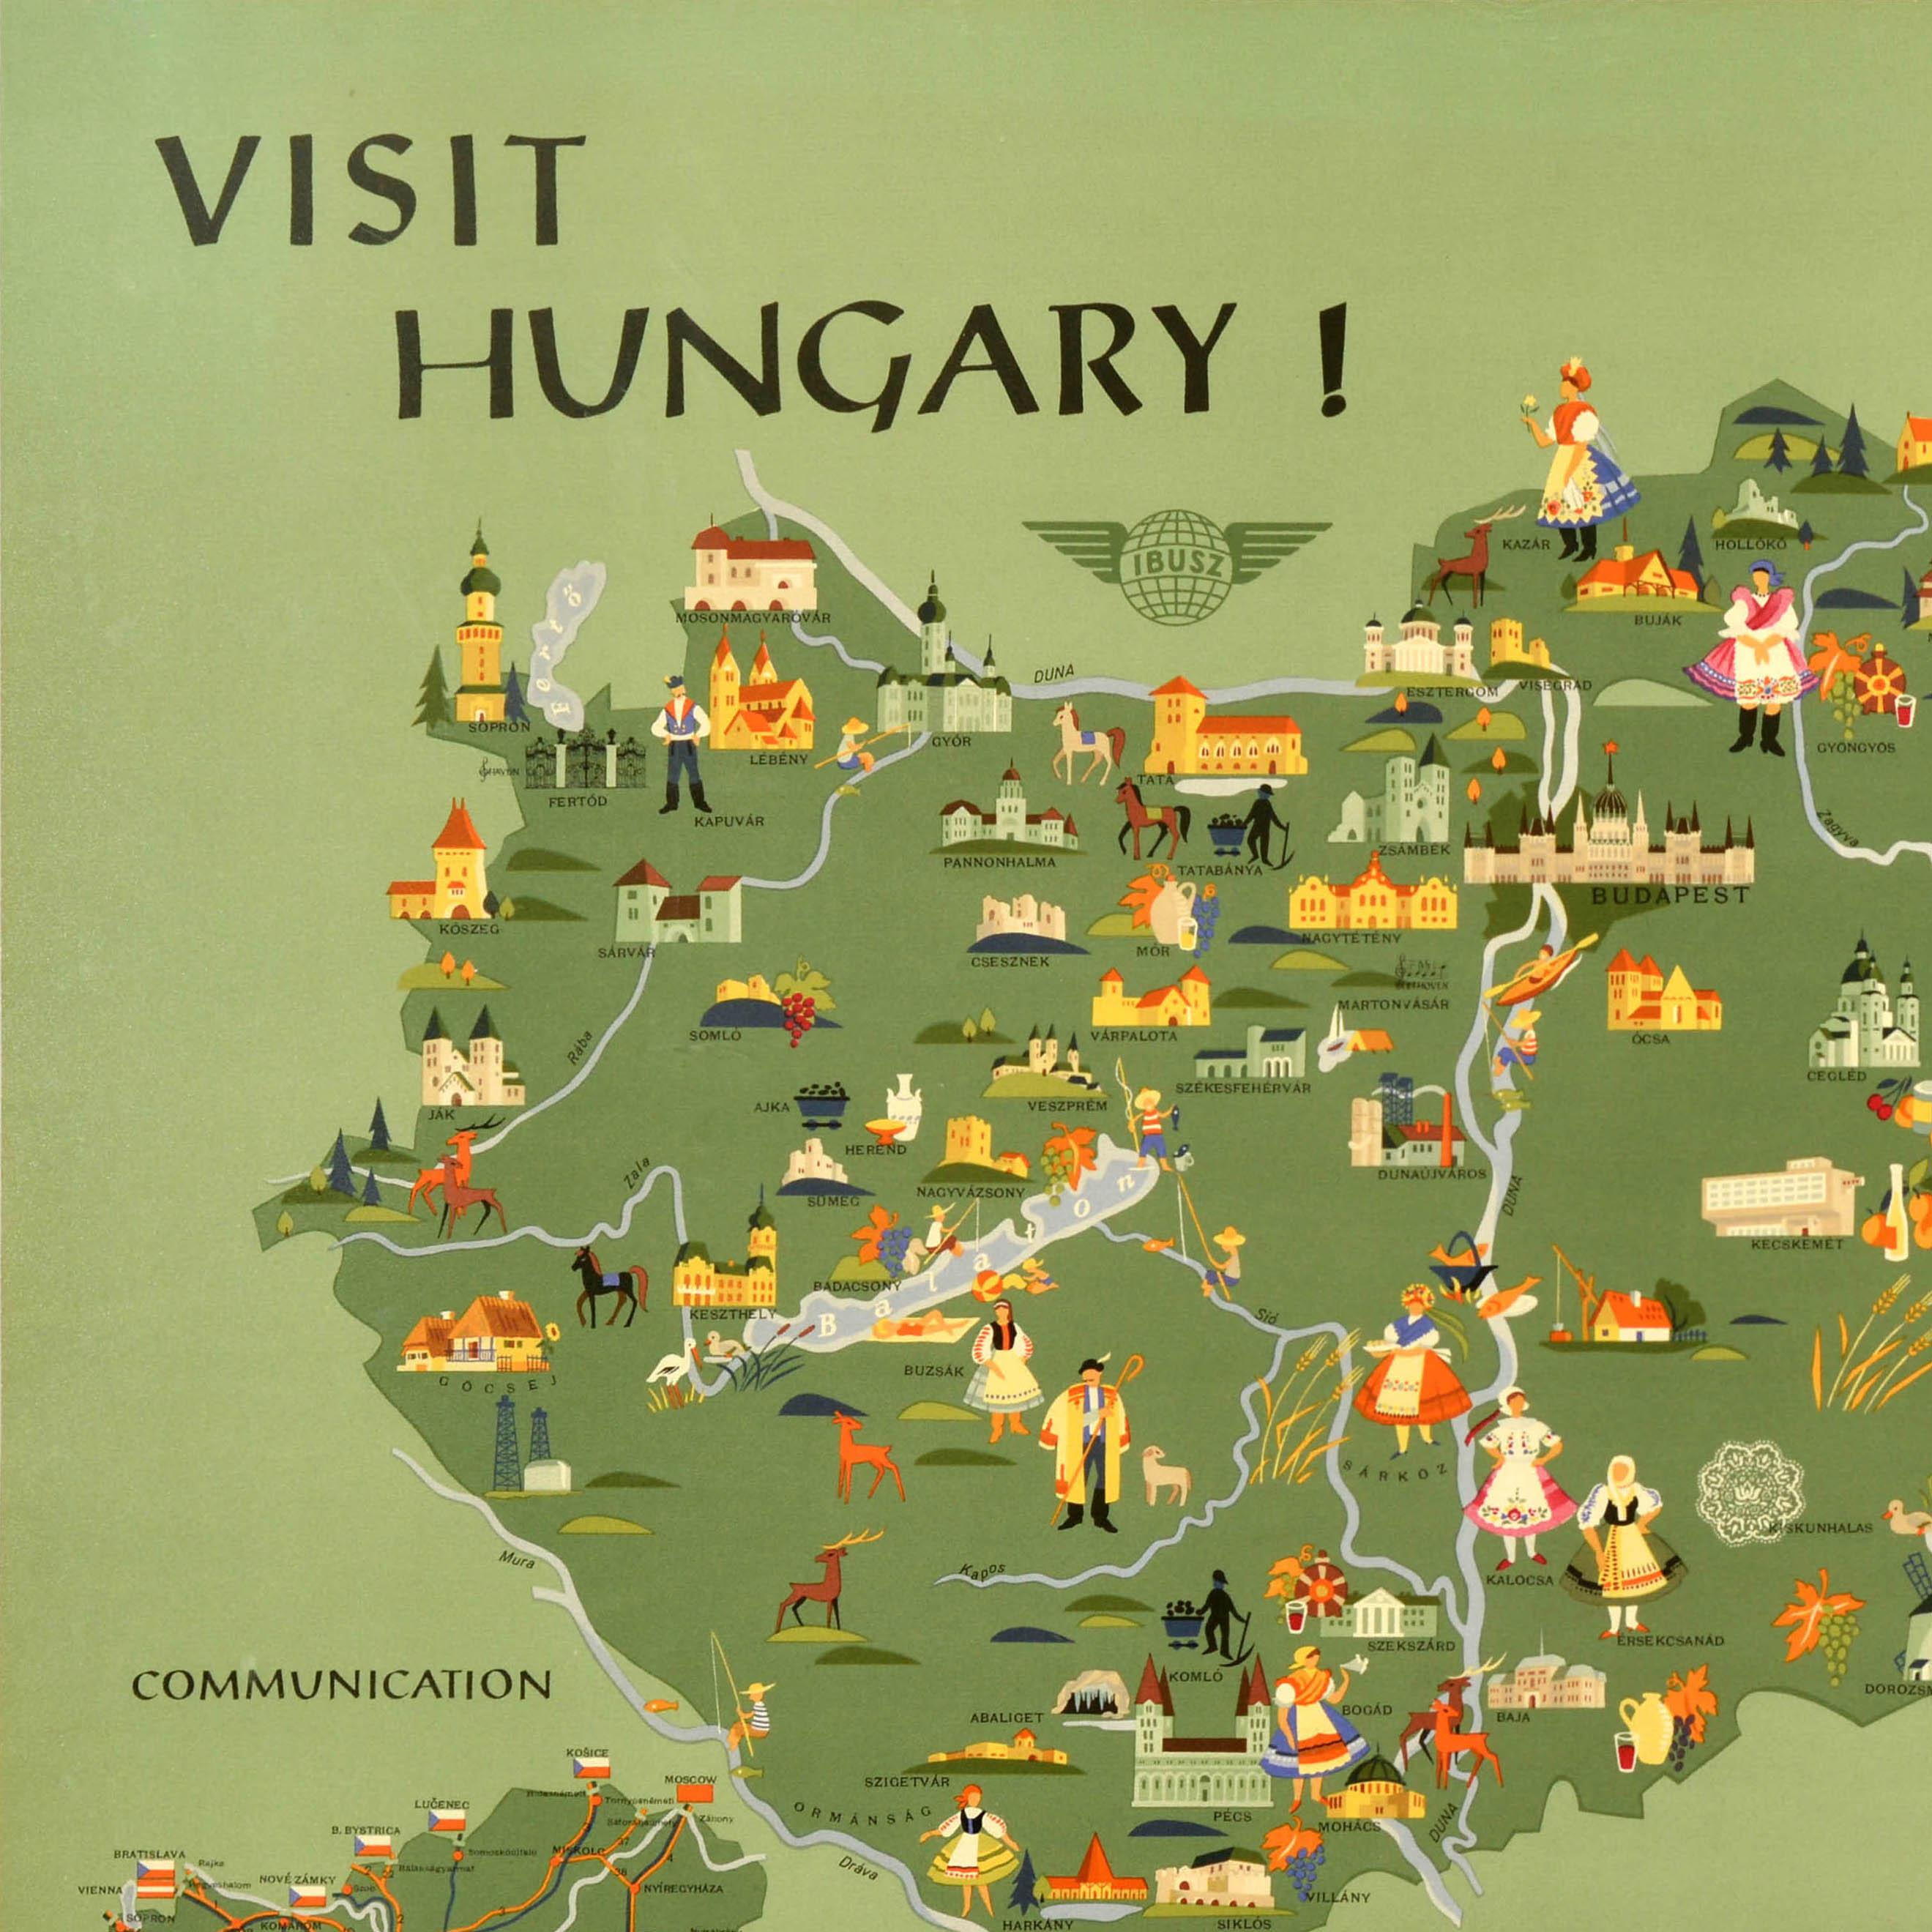 Original Vintage-Reiseplakat - Besuchen Sie Ungarn! - mit einer Bildkarte des Landes mit bunten Illustrationen von Menschen in traditioneller Kleidung, historischen Schlössern und anderen Sehenswürdigkeiten, Seen und Flüssen, Wein und Essen,